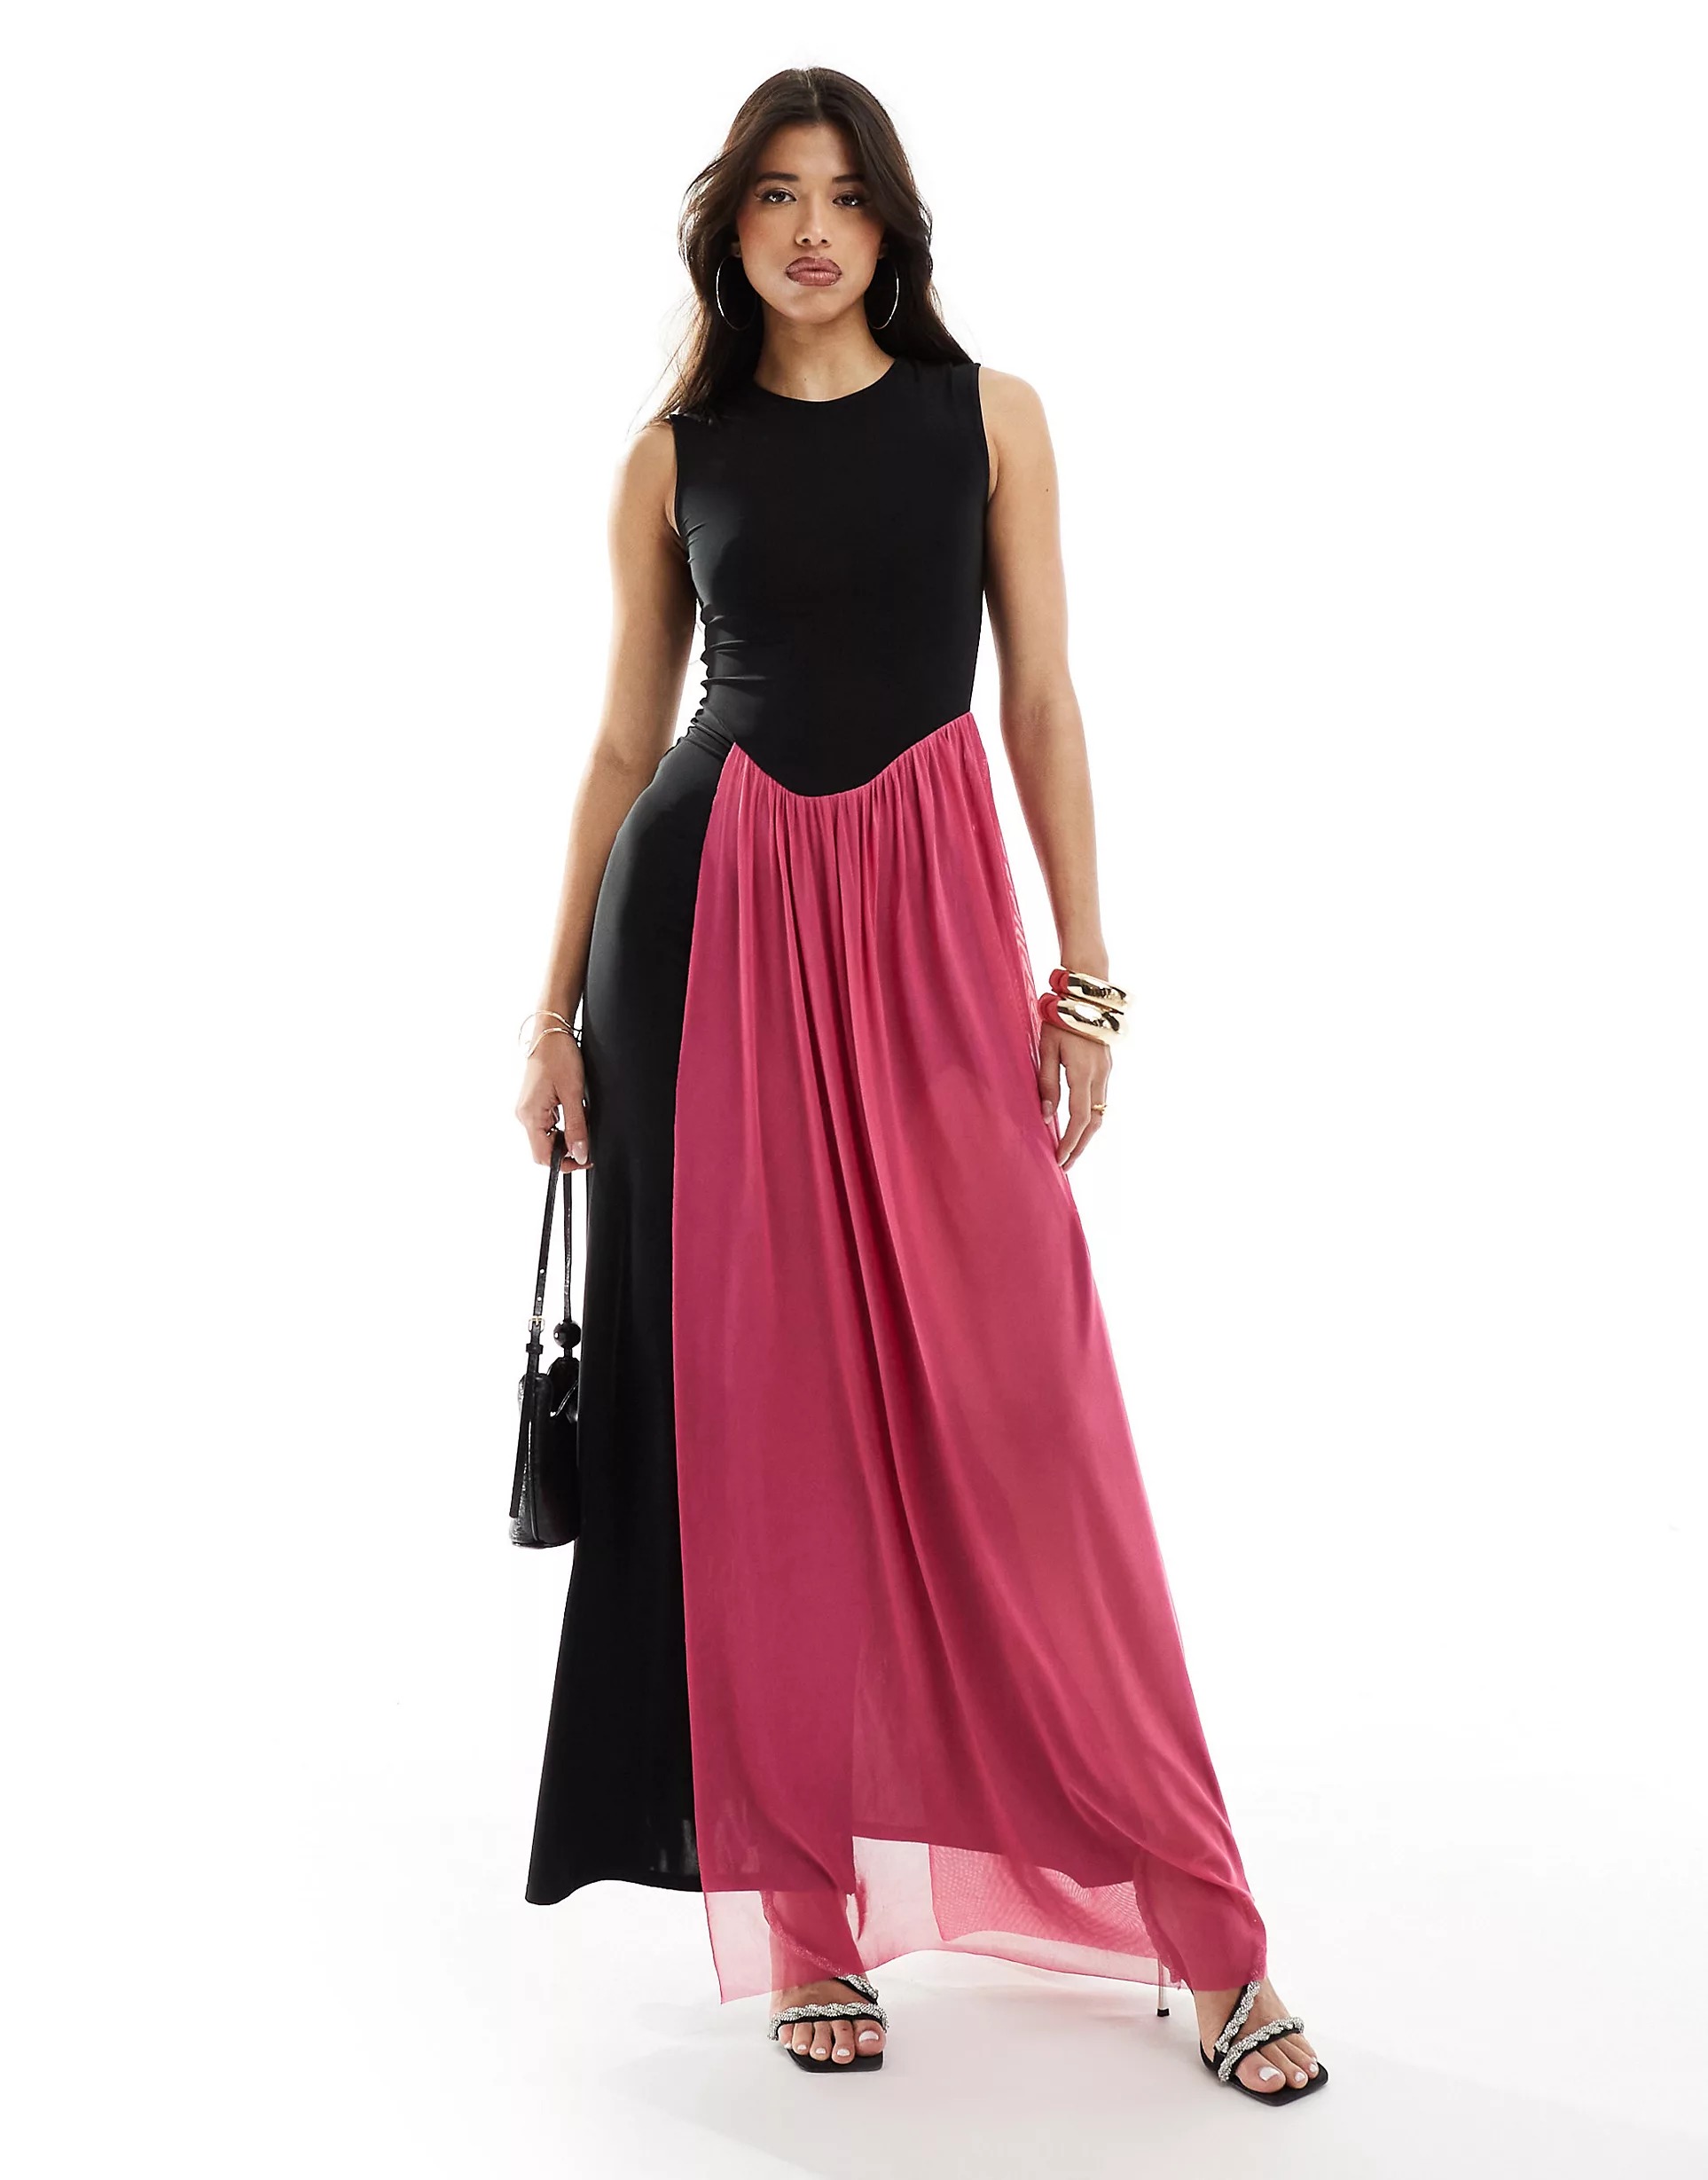 Платье макси Asos Sleeveless Drape Detail, черный/розовый платье макси asos sleeveless drape detail черный розовый